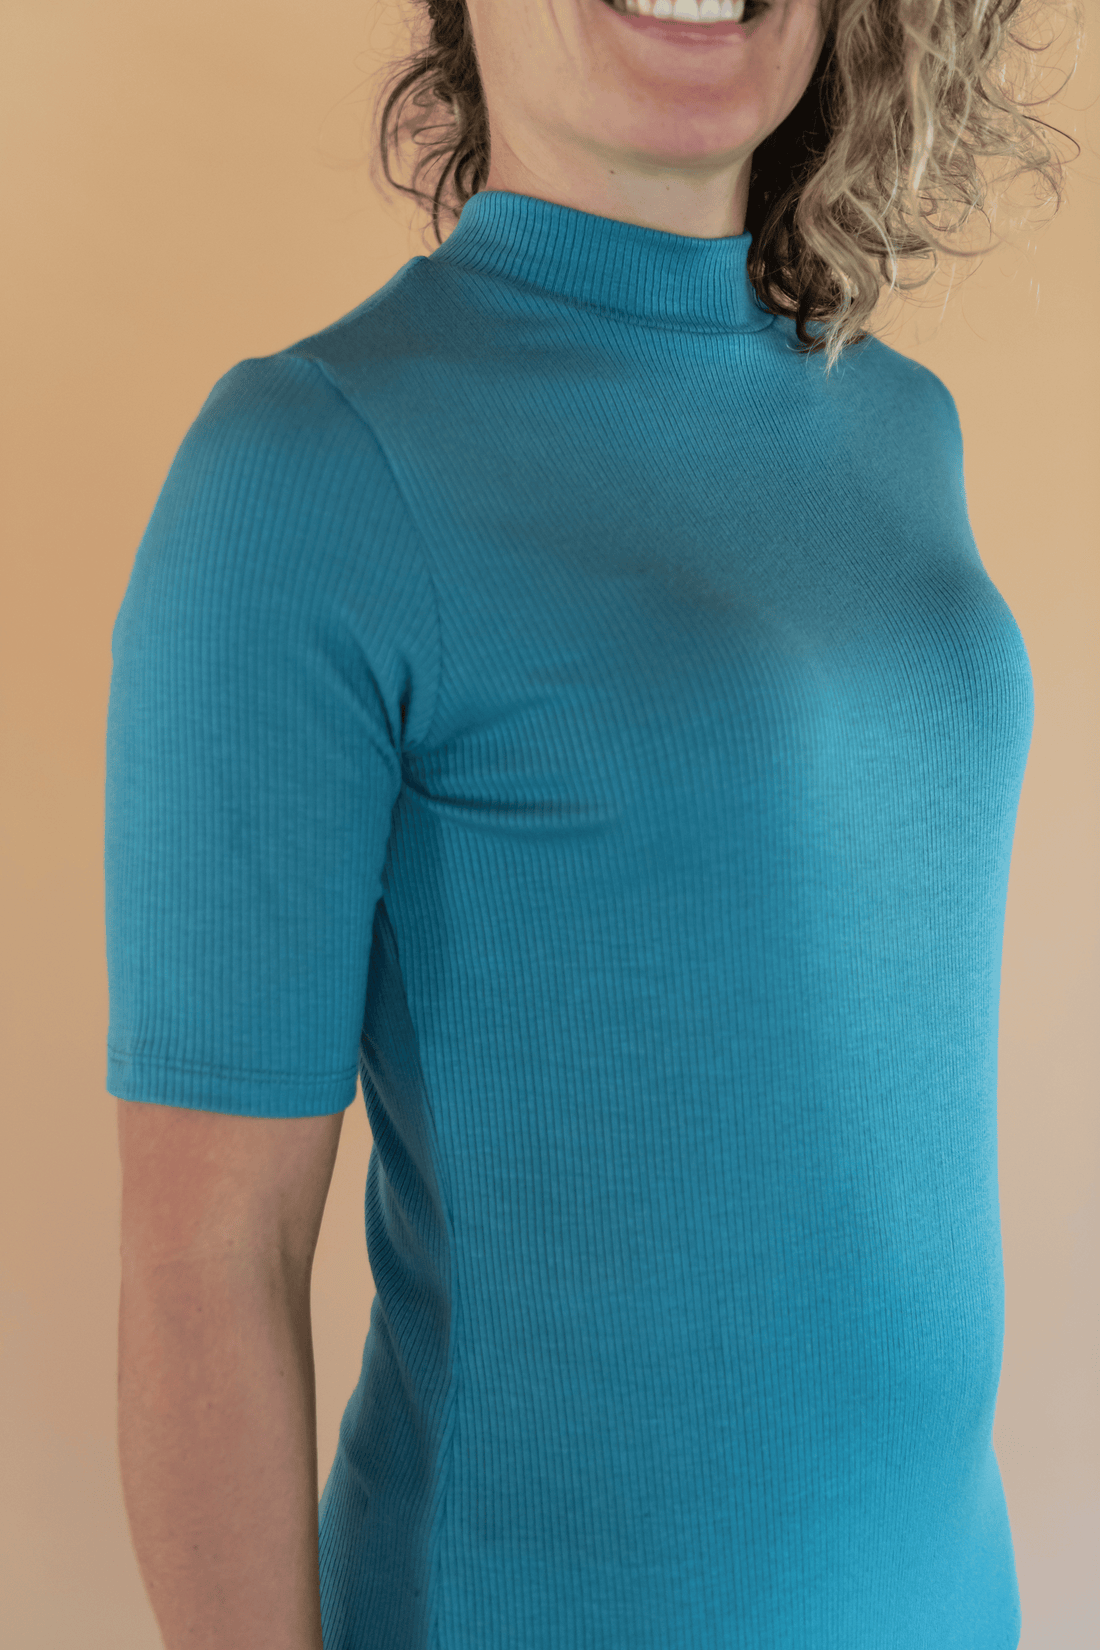 Haut pour femmes bleu pâle à manches courtes et col montant en tissu rib fait au Québec, Canada.